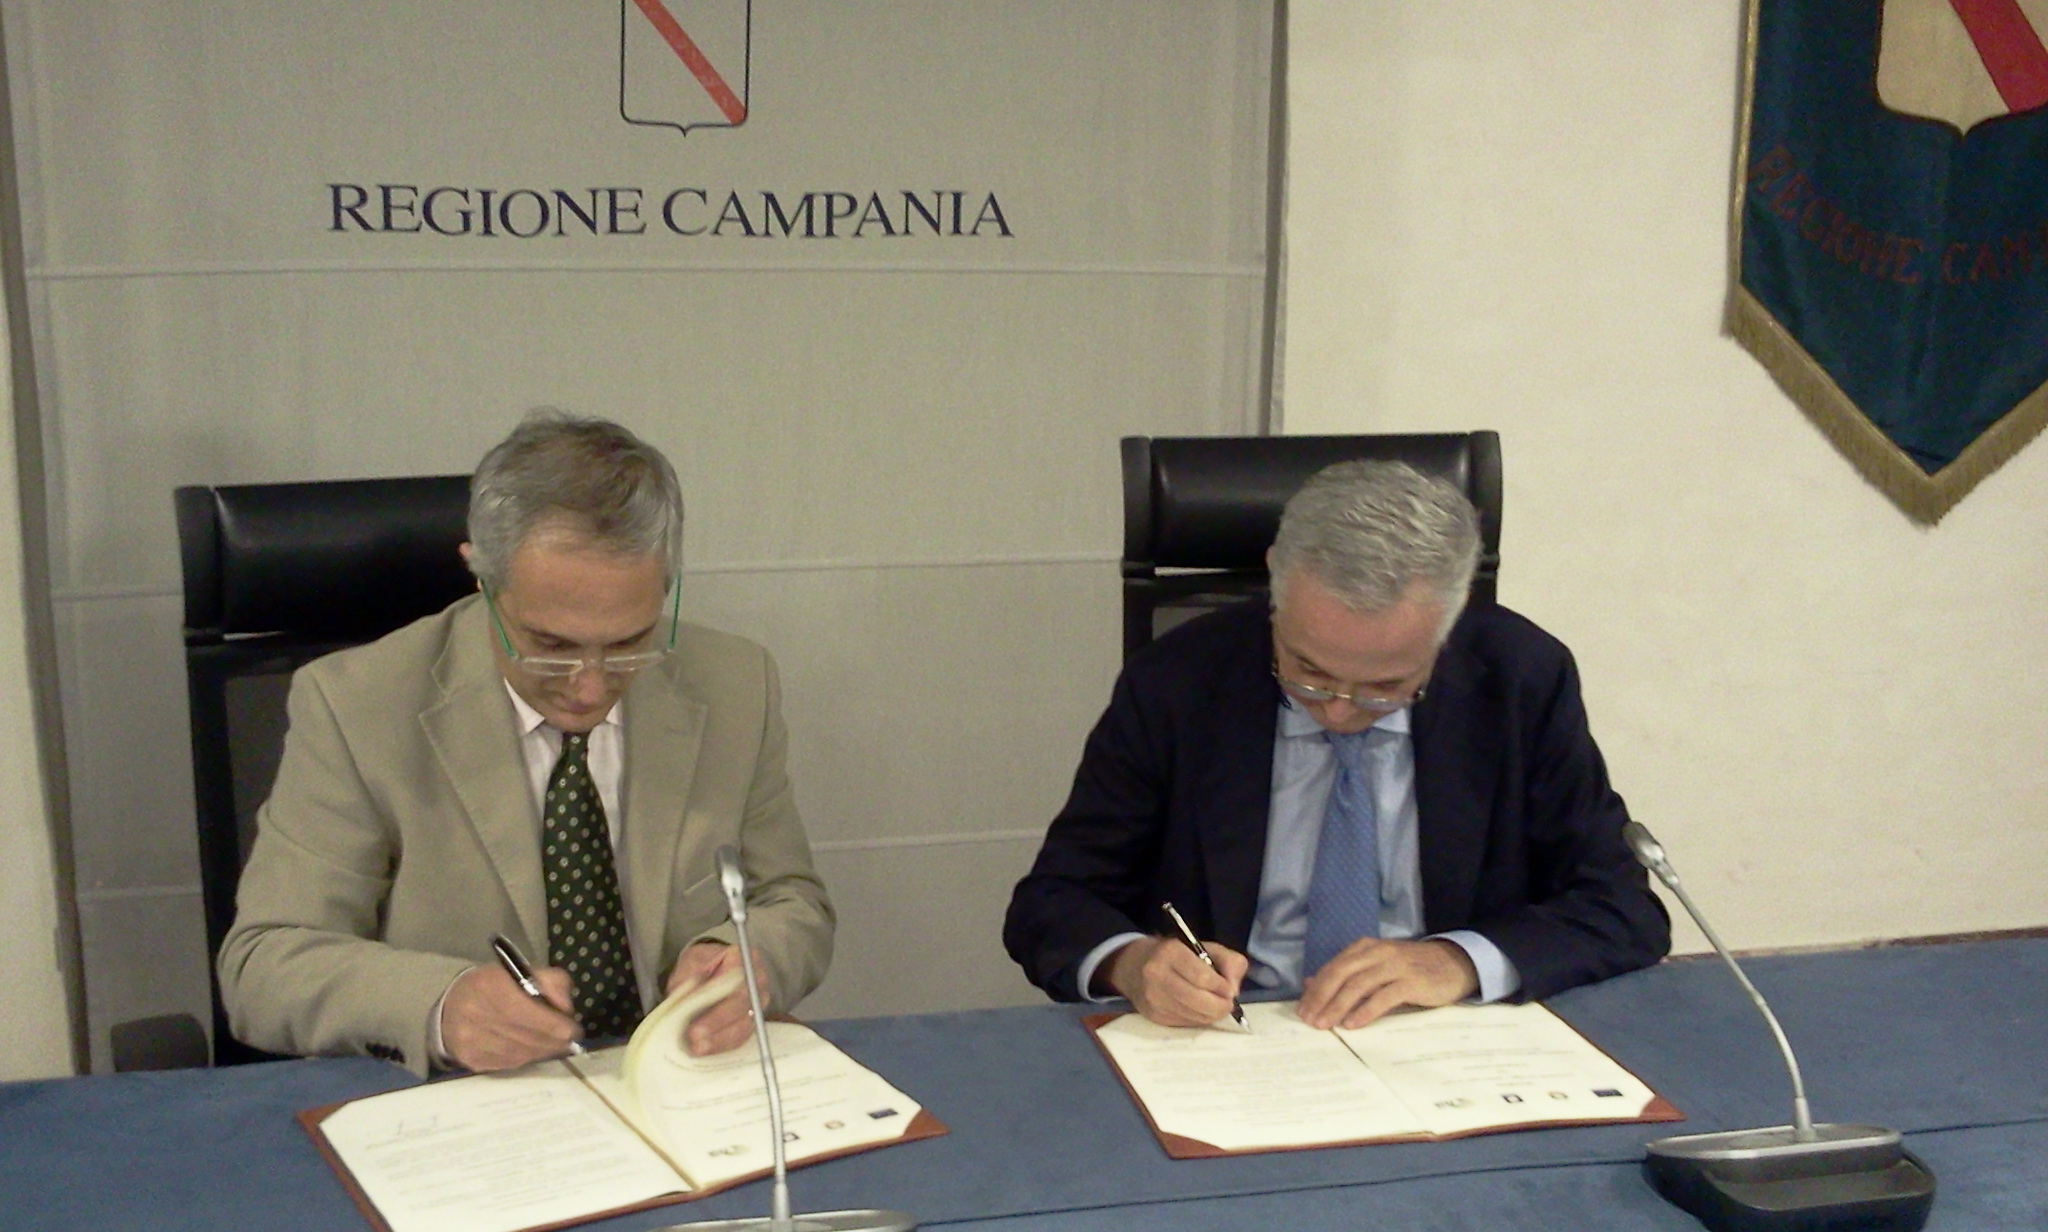  Campania, Protezione civile: firmato protocollo con Ministero Interno